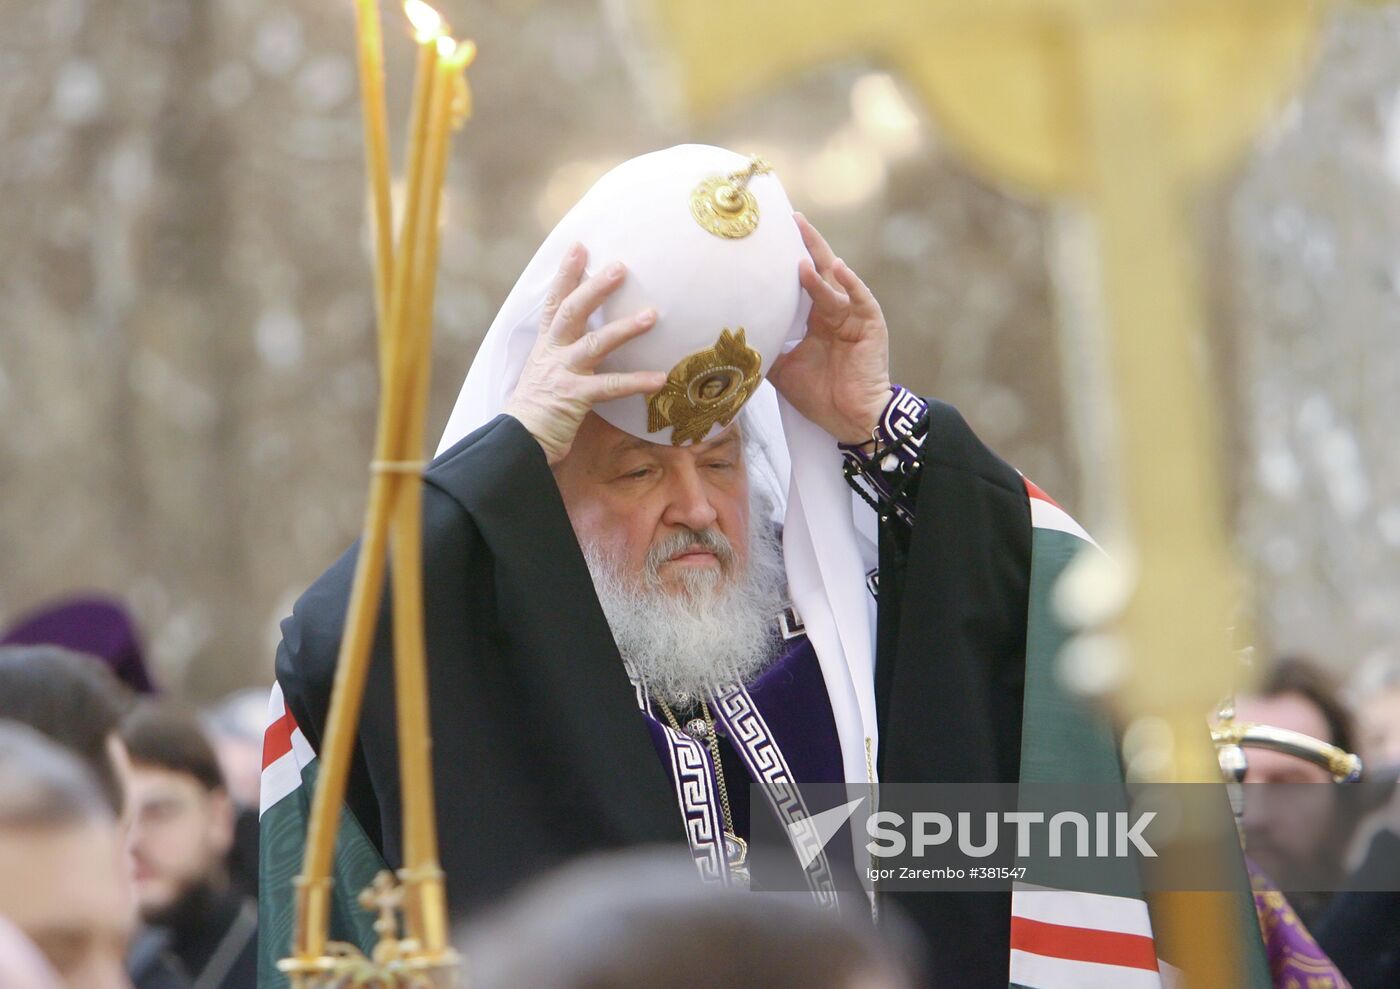 Russian Orthodox Patriarch Kirill